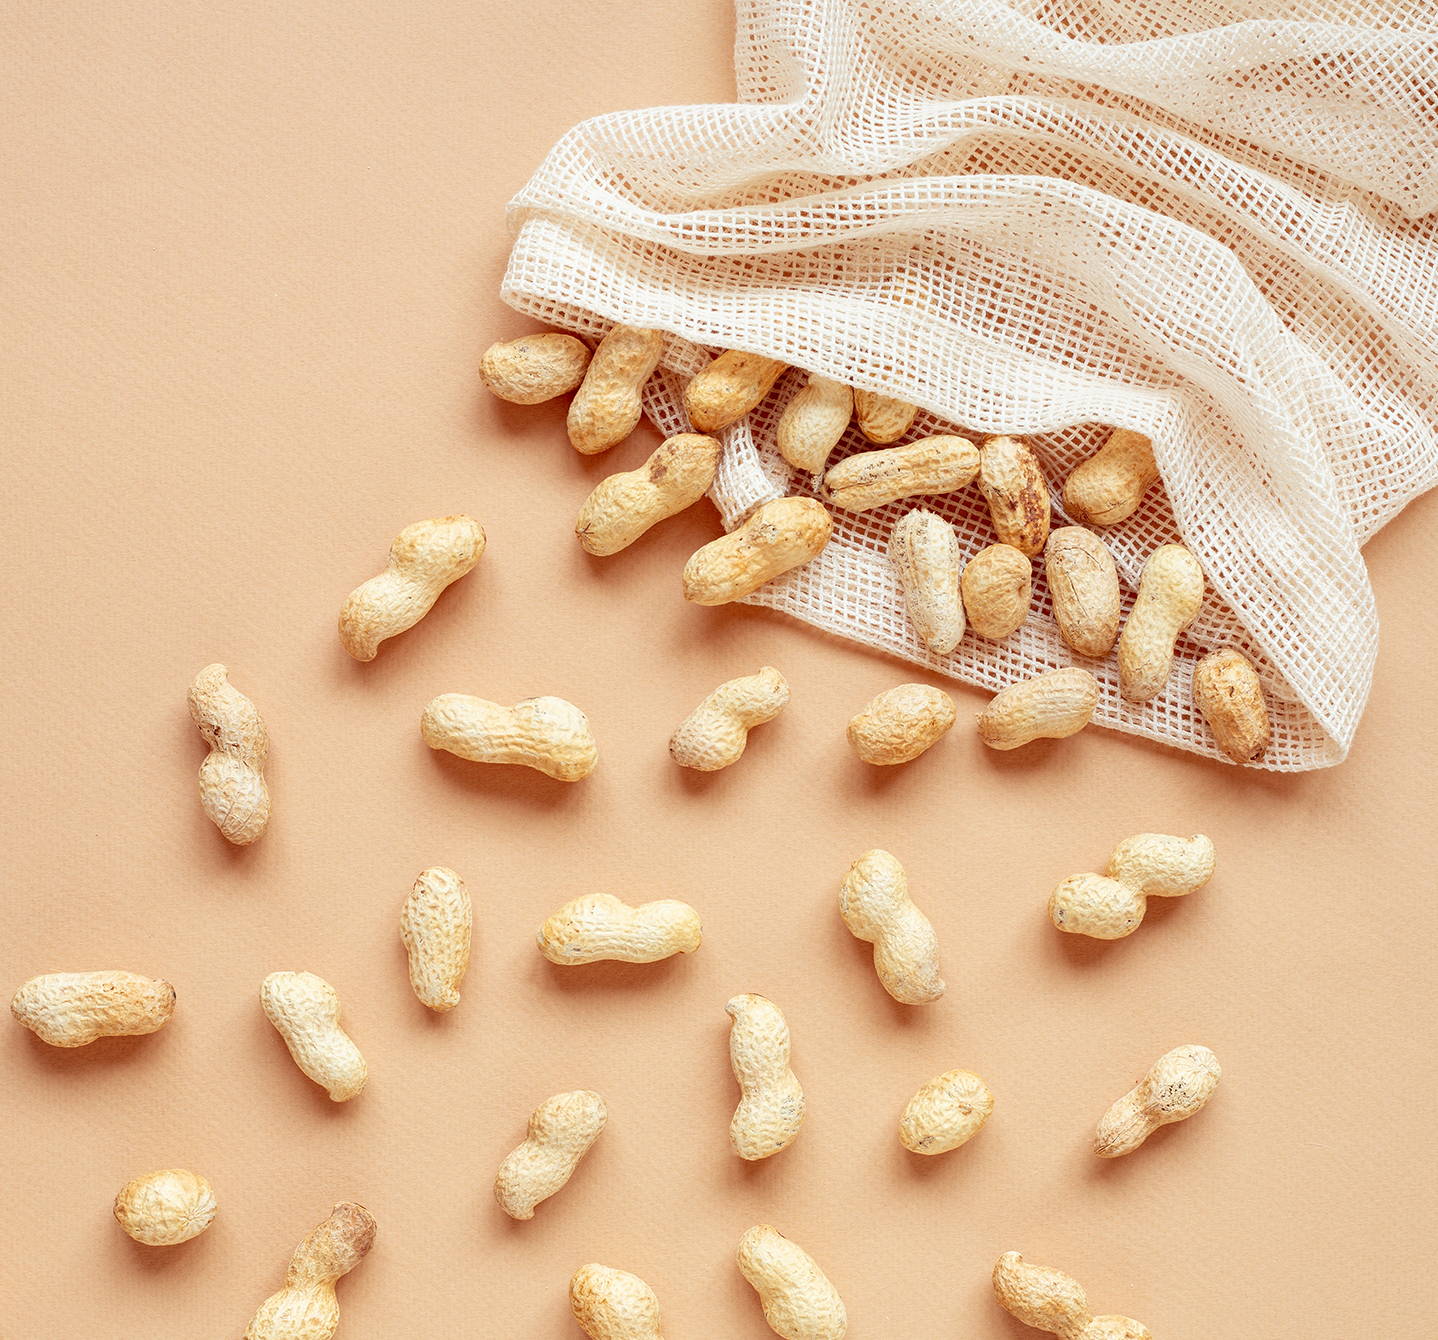  Was ist eine Erdnussallergie? Reaktionen auf Erdnüsse, die in Schoten wachsen, beginnen tendenziell in der frühen Kindheit und können schwerwiegend sein.